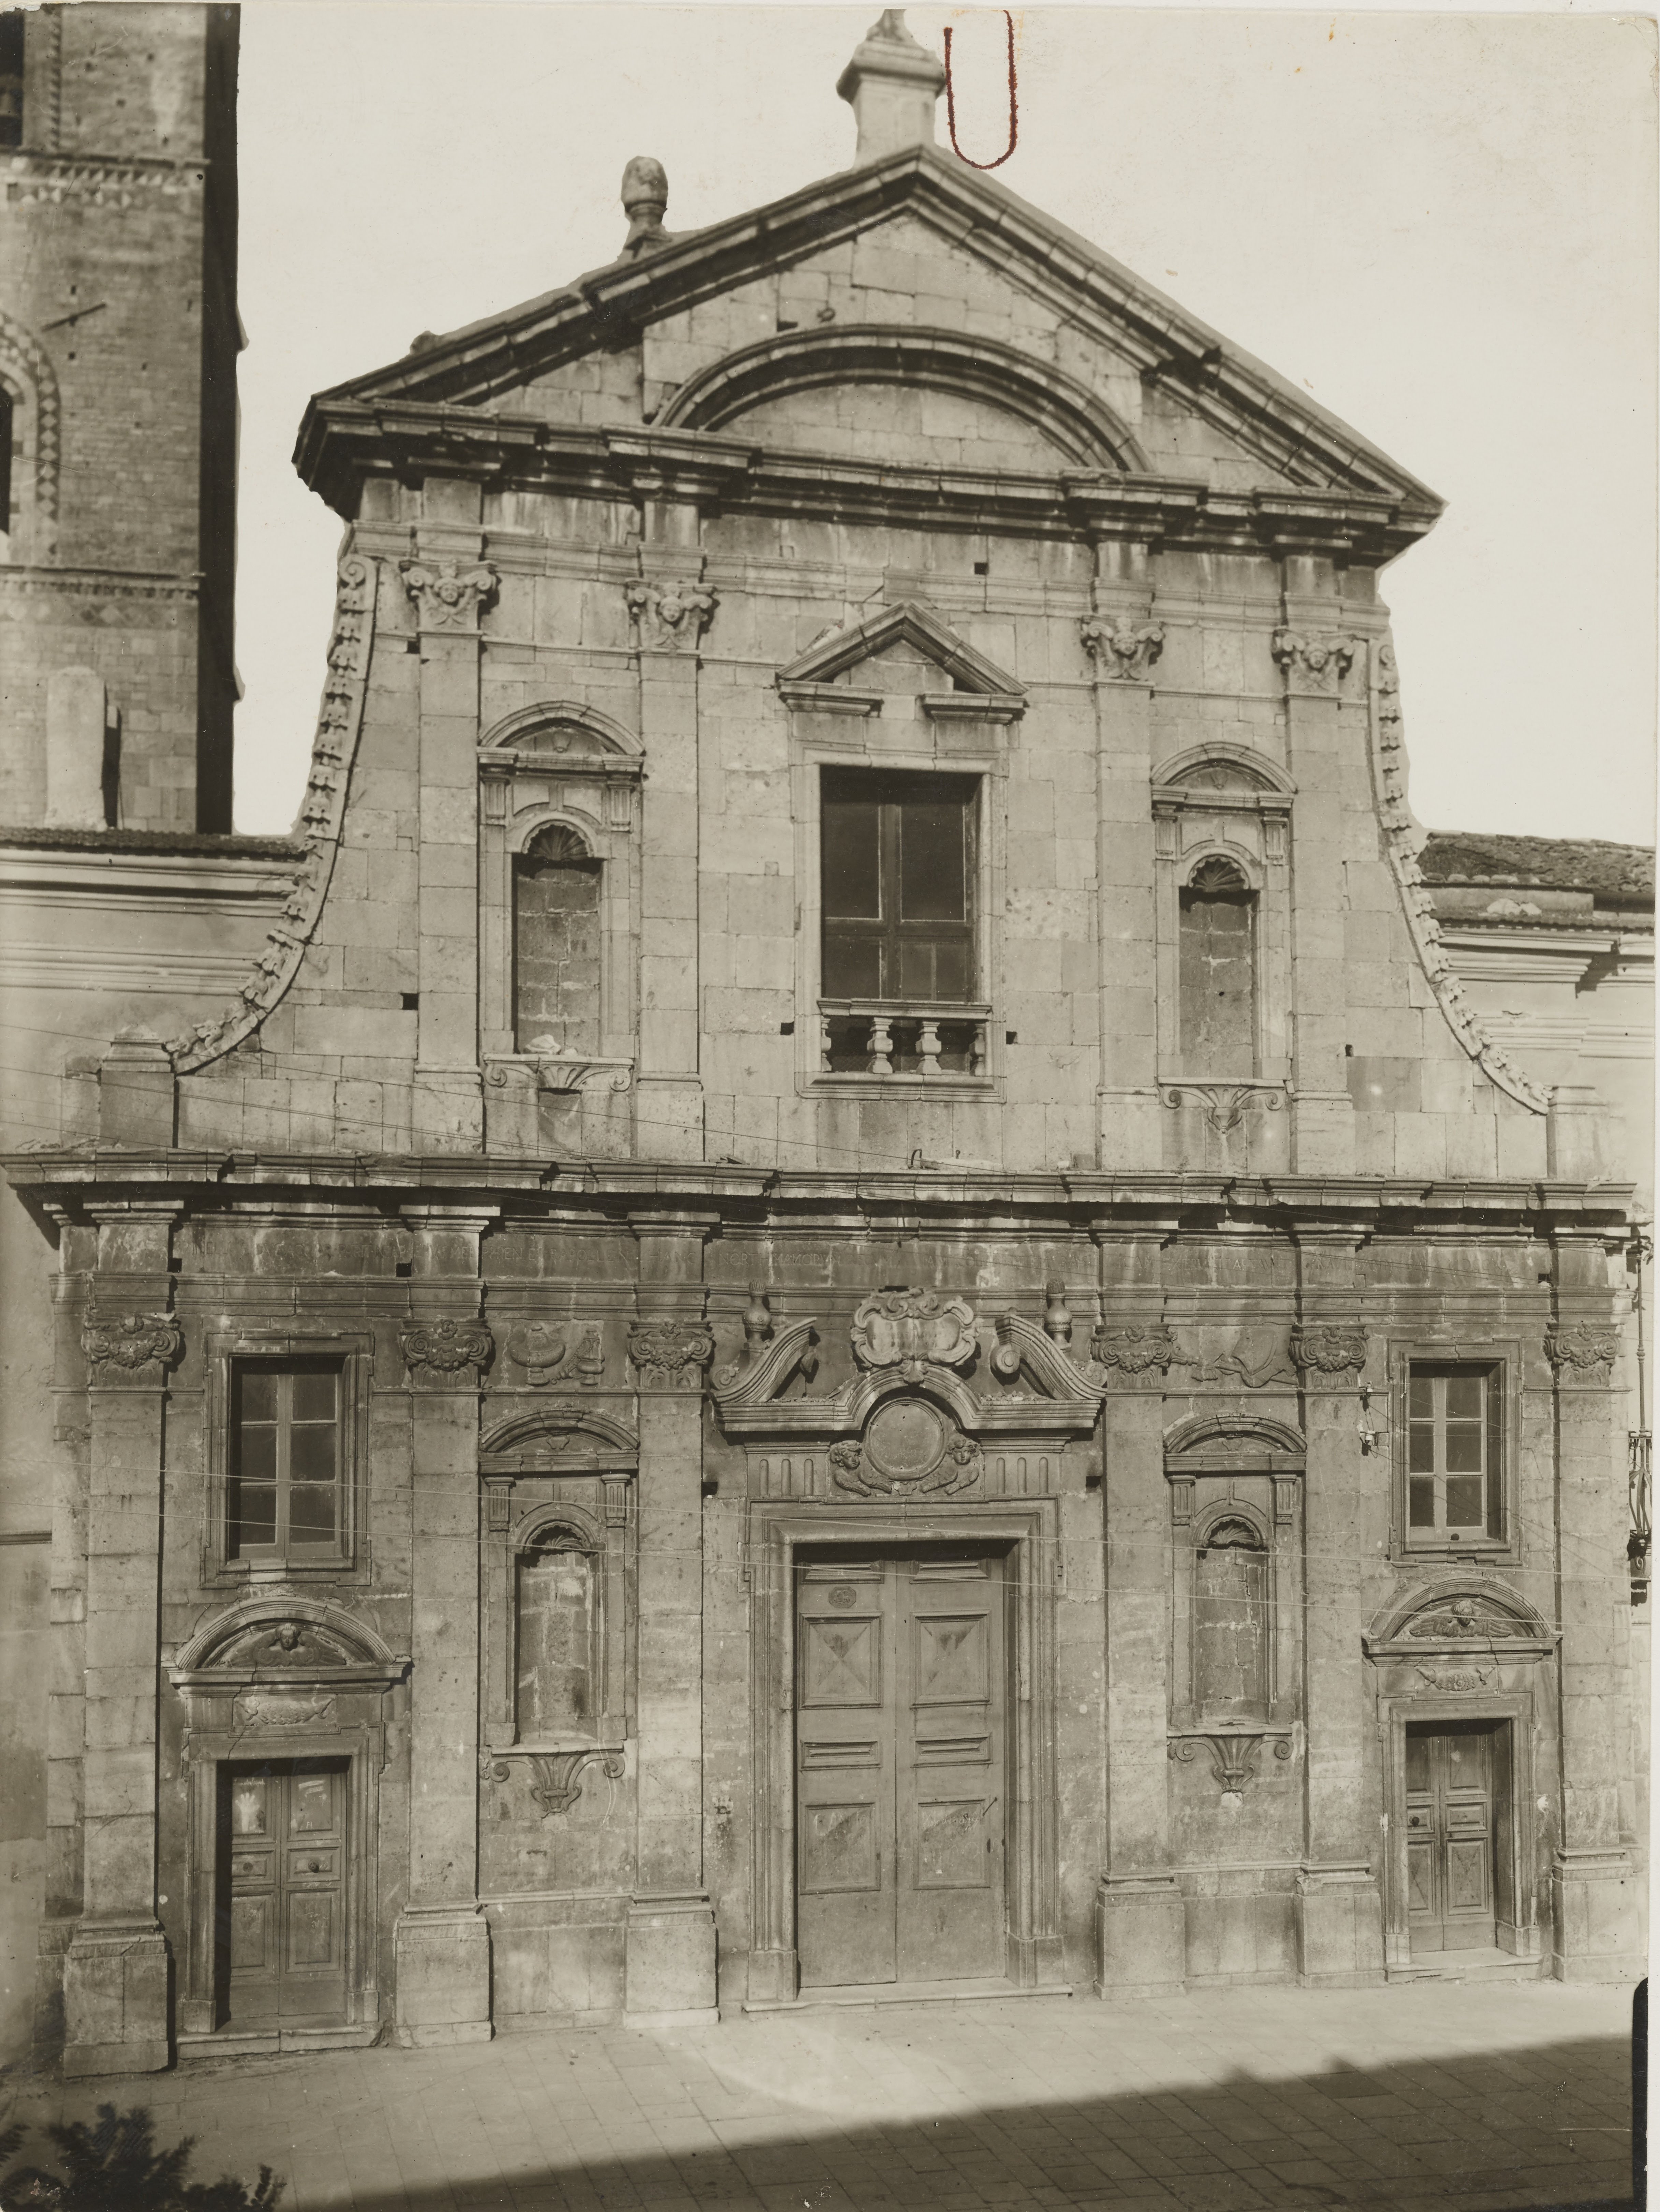 Fotografo non identificato, Melfi - Cattedrale di S. Maria Assunta, facciata, 1926-1950, gelatina ai sali d'argento, MPI6061784